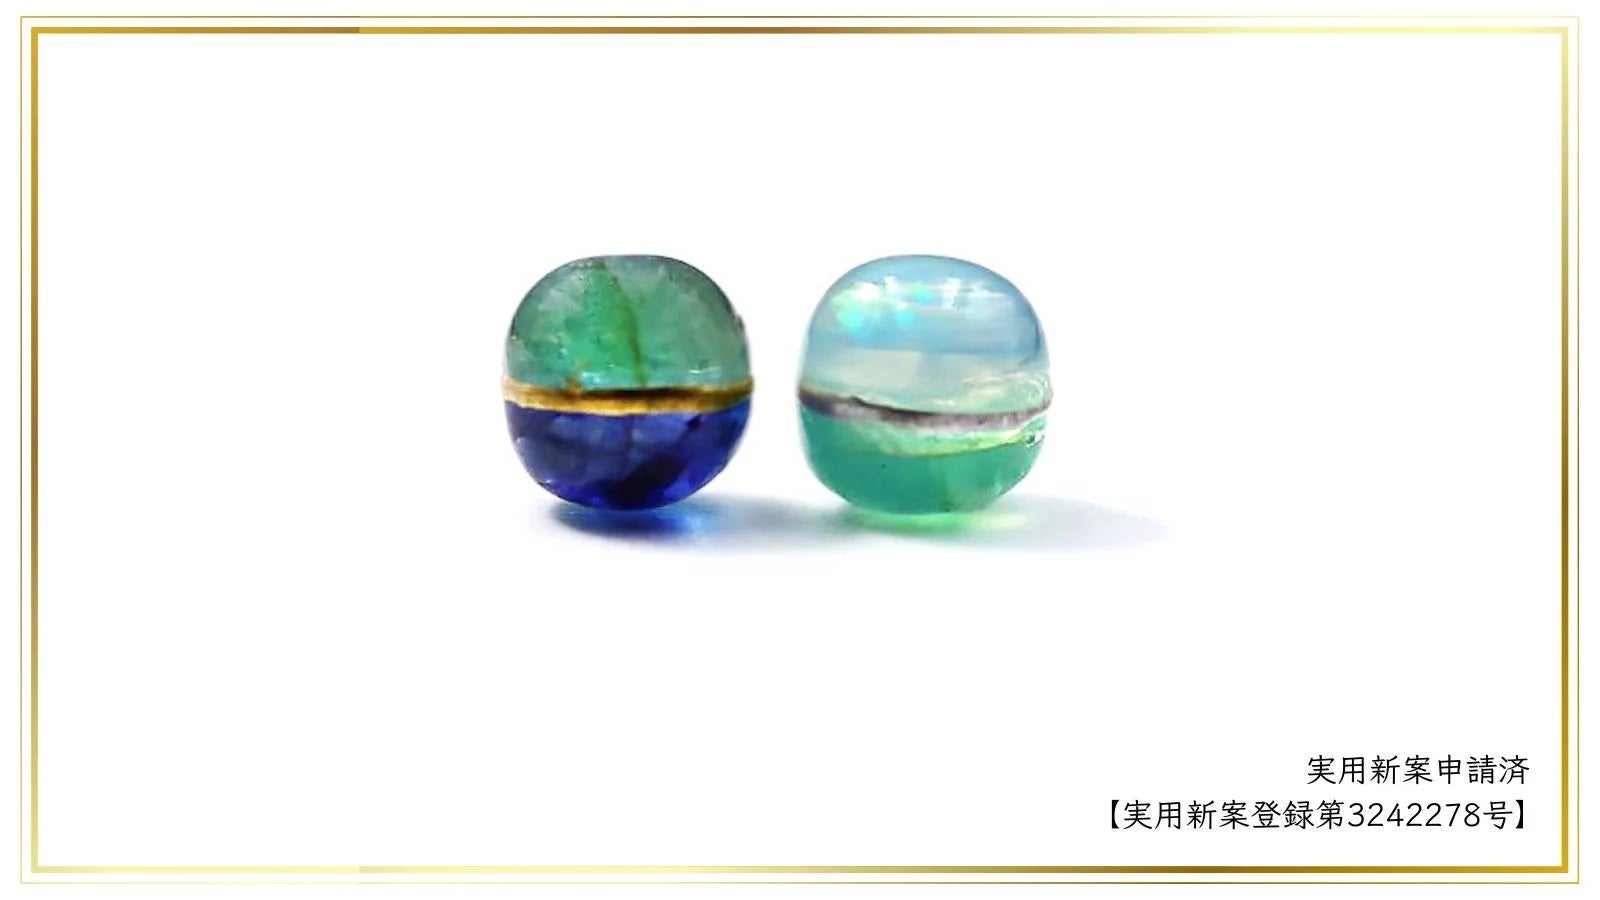 販売累計1000万円越えの『2色珠』に「より宝石らしい、美しい宝石を」目指したプレミアムシリーズが登場です。